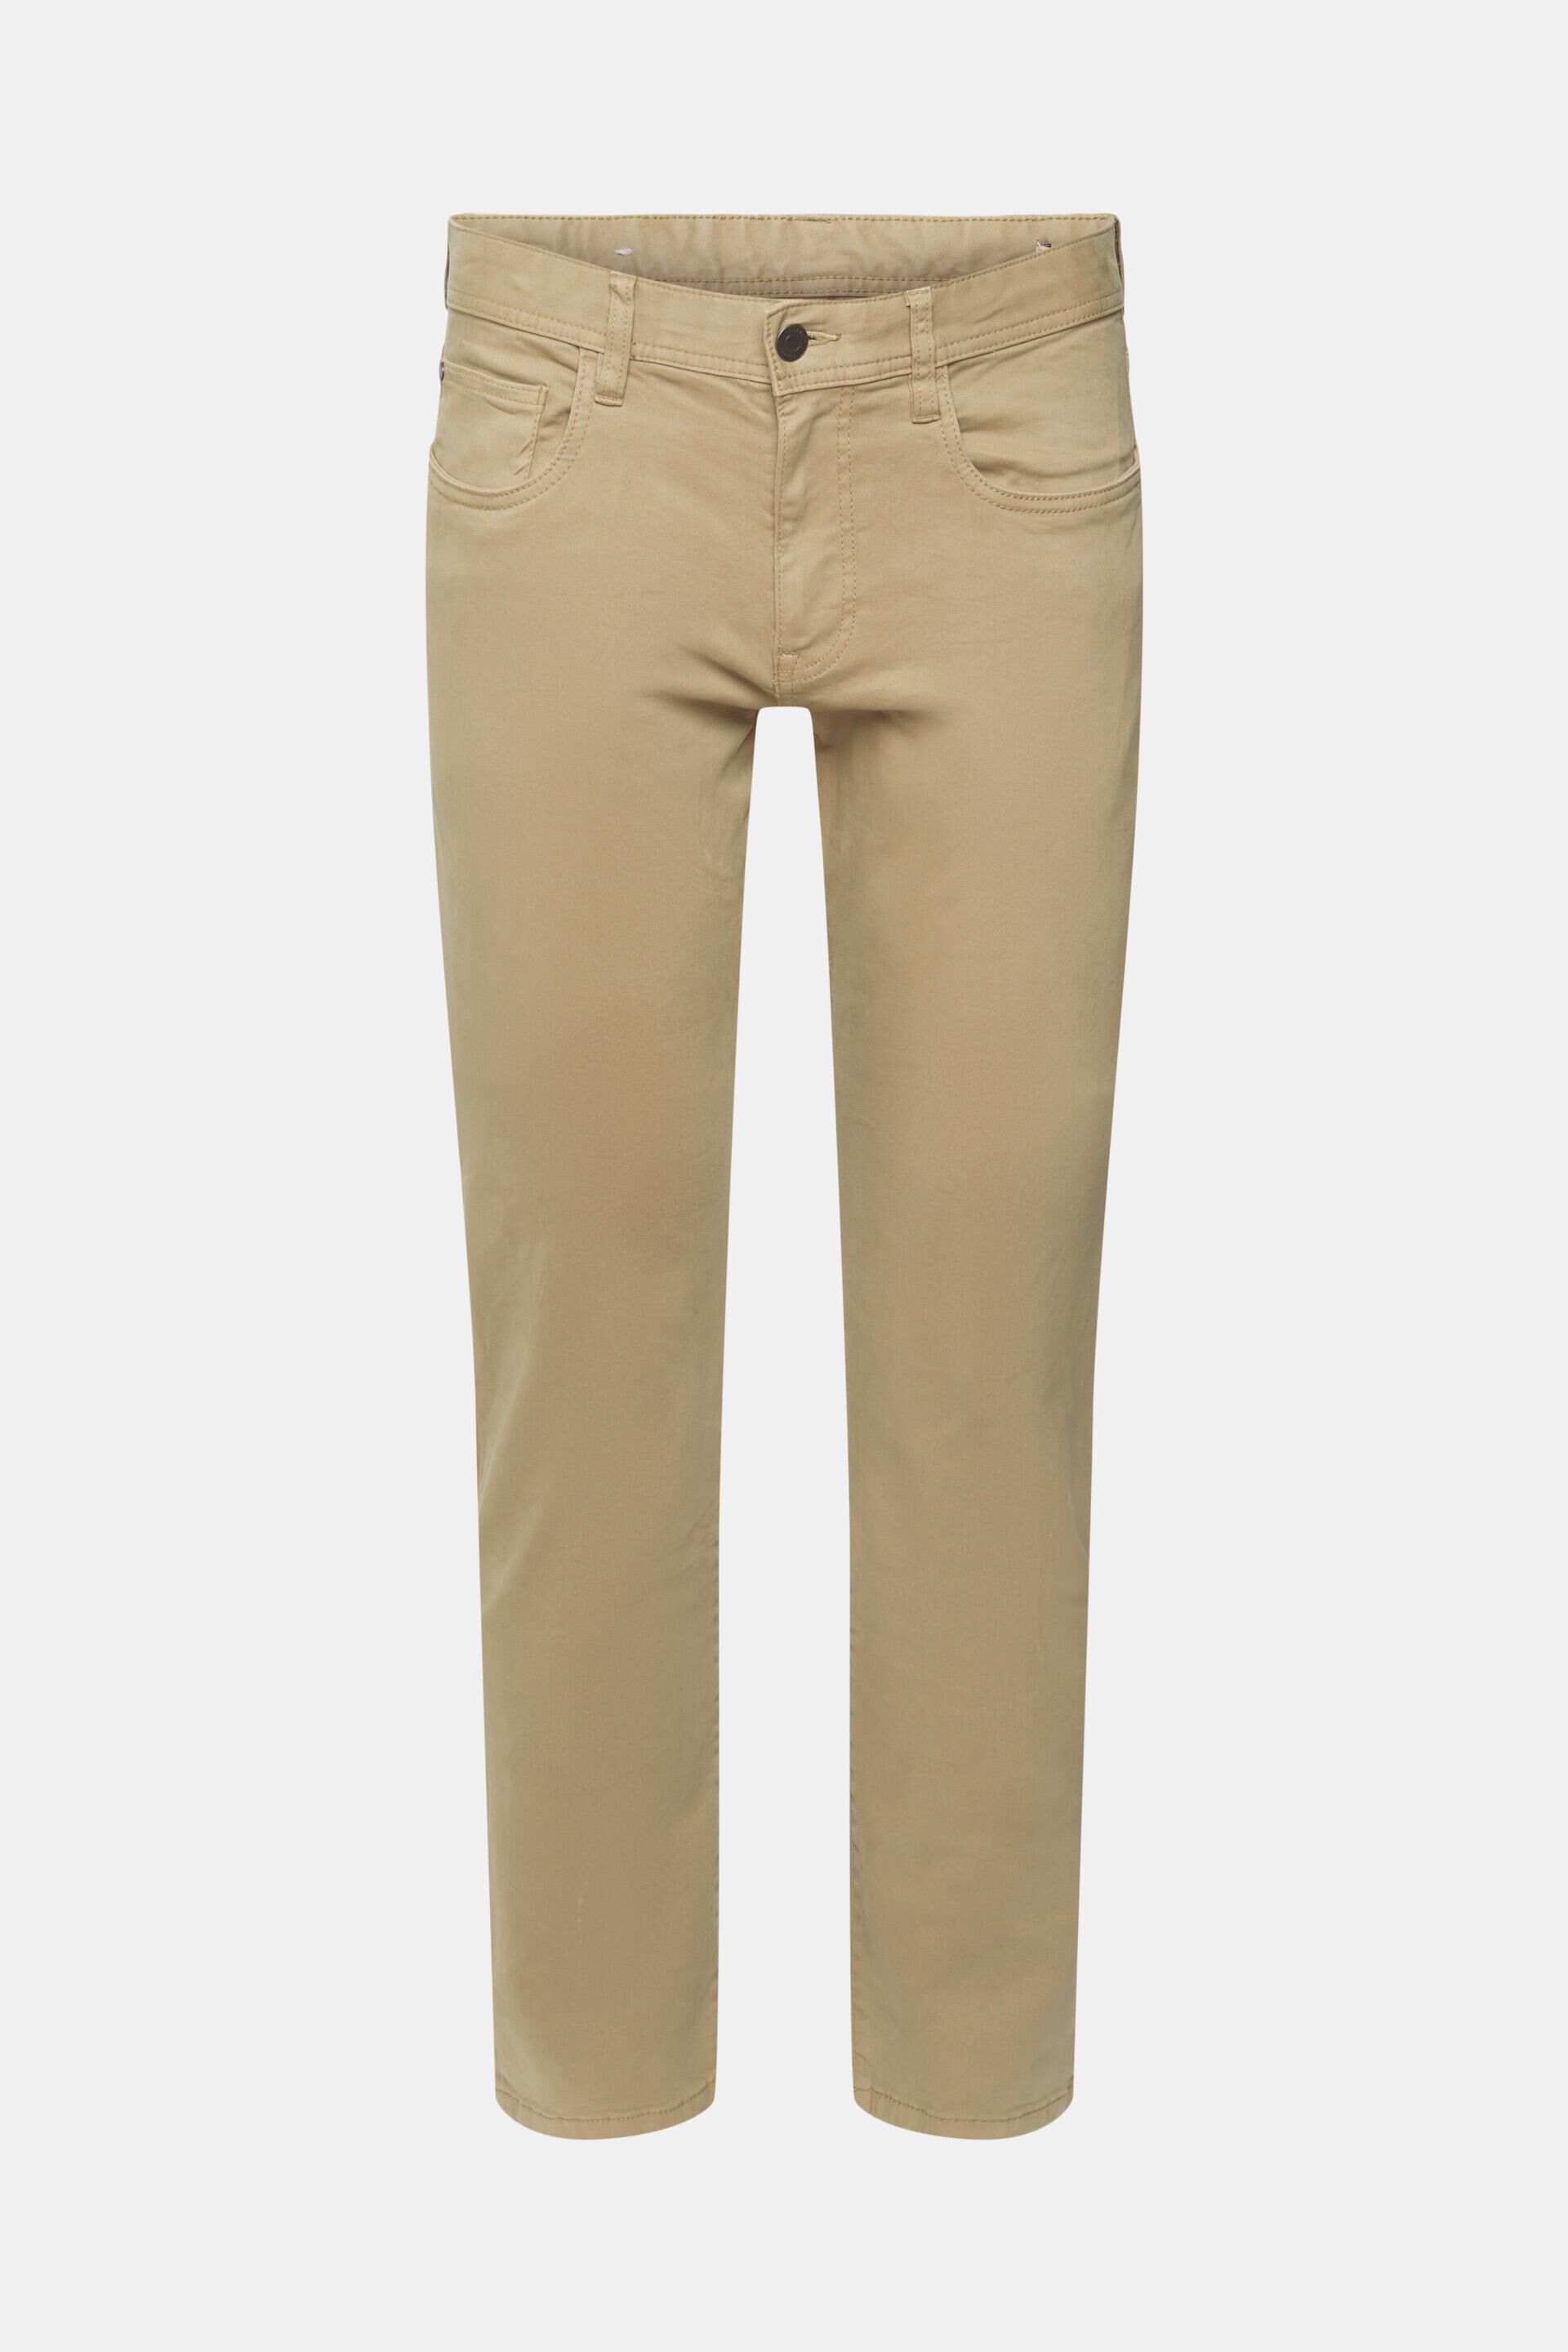 Esprit Pantalon bruin casual uitstraling Mode Pakken Pantalons 